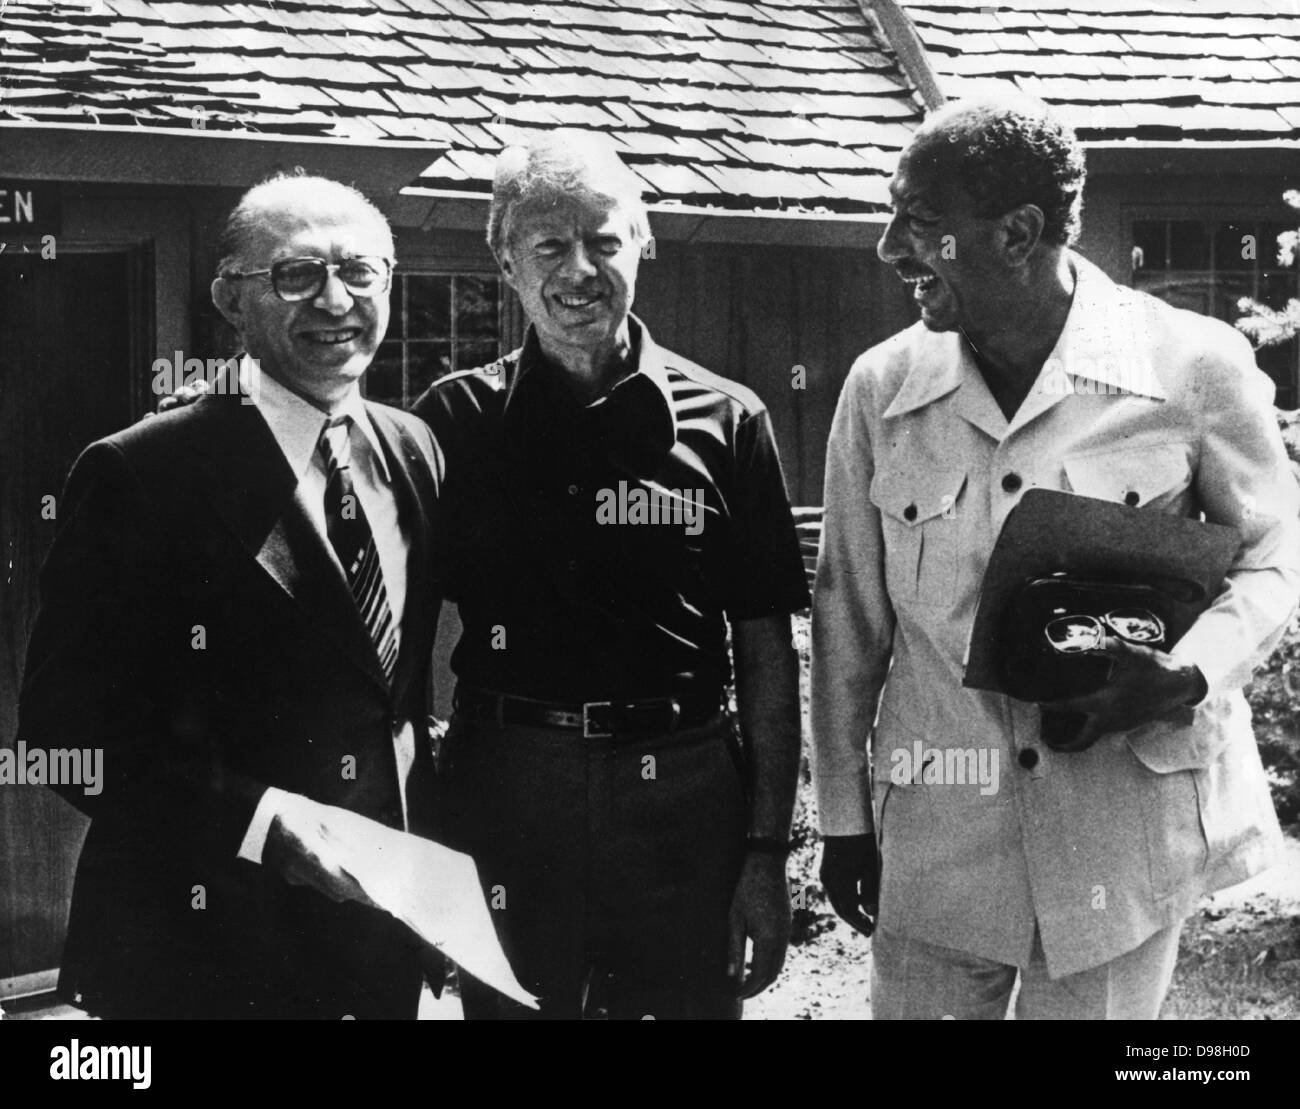 Accordi di Camp David sono stati firmati dal presidente egiziano Anwar El Sadat e il Primo Ministro israeliano Menachem Begin il 17 settembre 1978, dopo tredici giorni di negoziati segreti a Camp David. Presidente americano Carter con Sadat e cominciare a Camp David Foto Stock